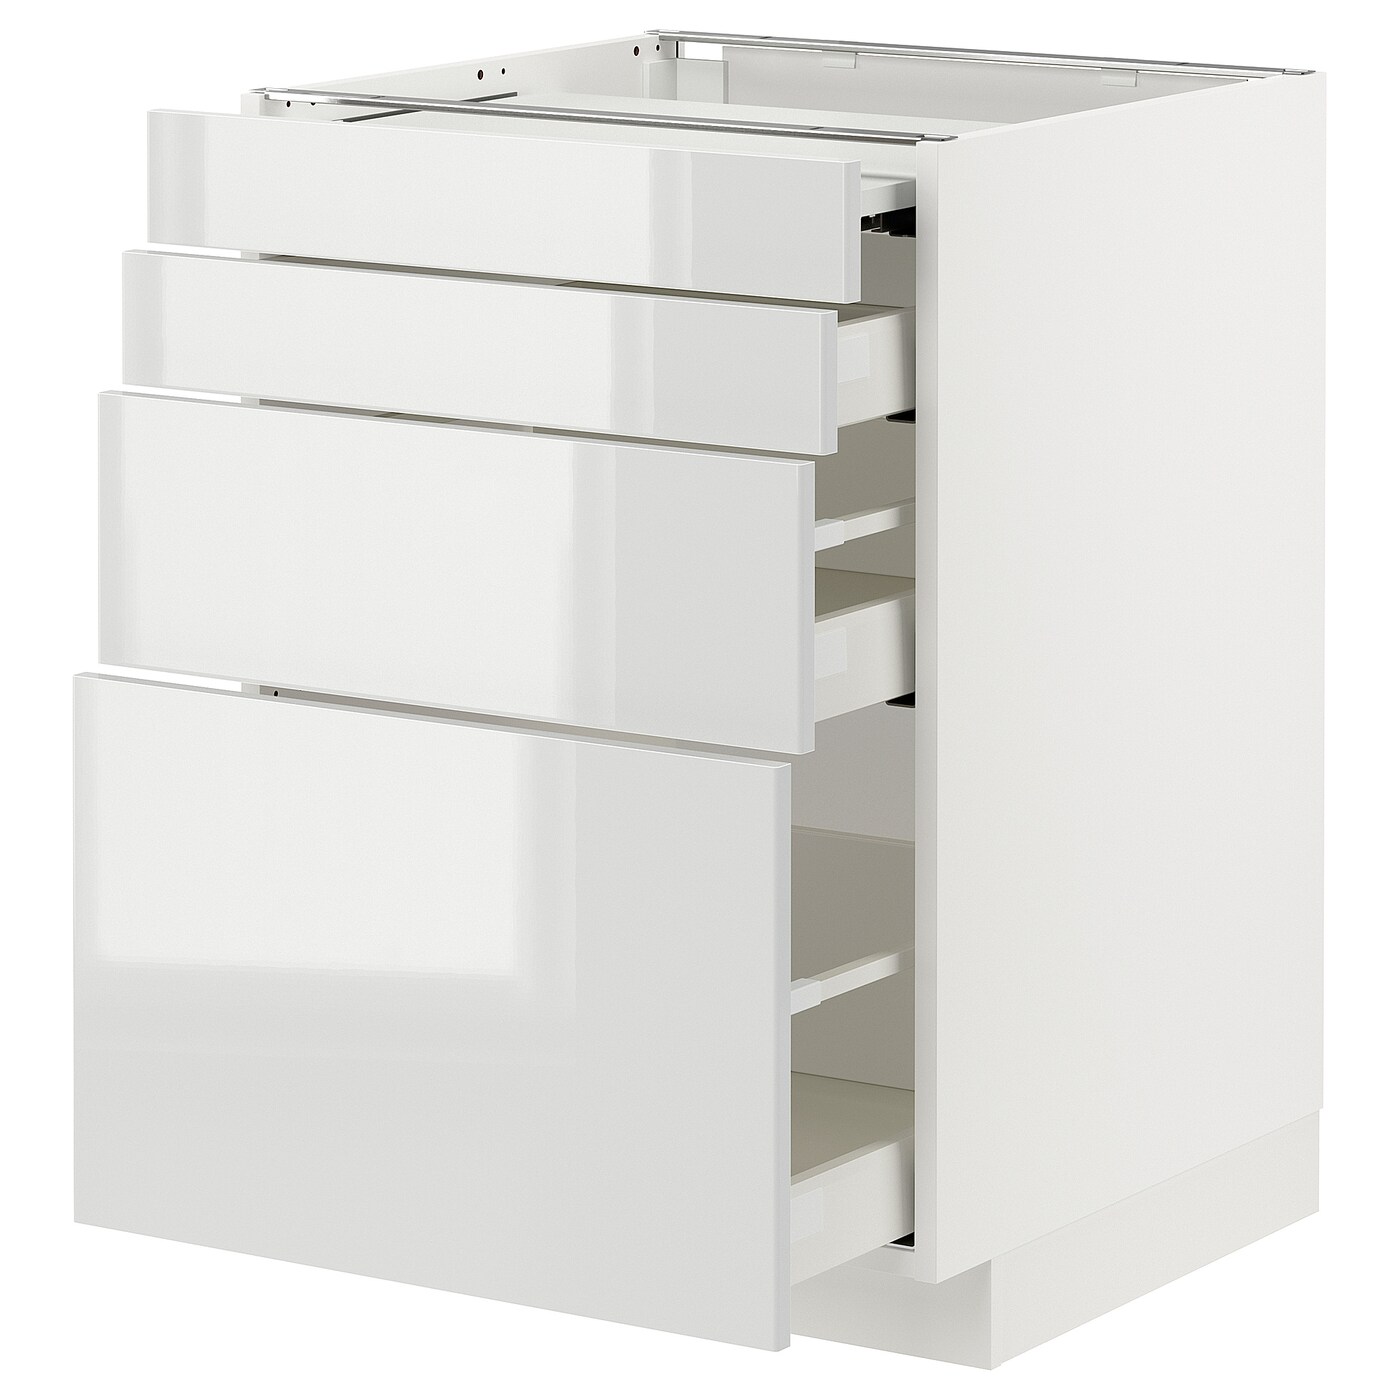 Напольный шкаф с выдвижной столешницей  - IKEA METOD MAXIMERA, 88x61,6x80см, белый, МЕТОД МАКСИМЕРА ИКЕА